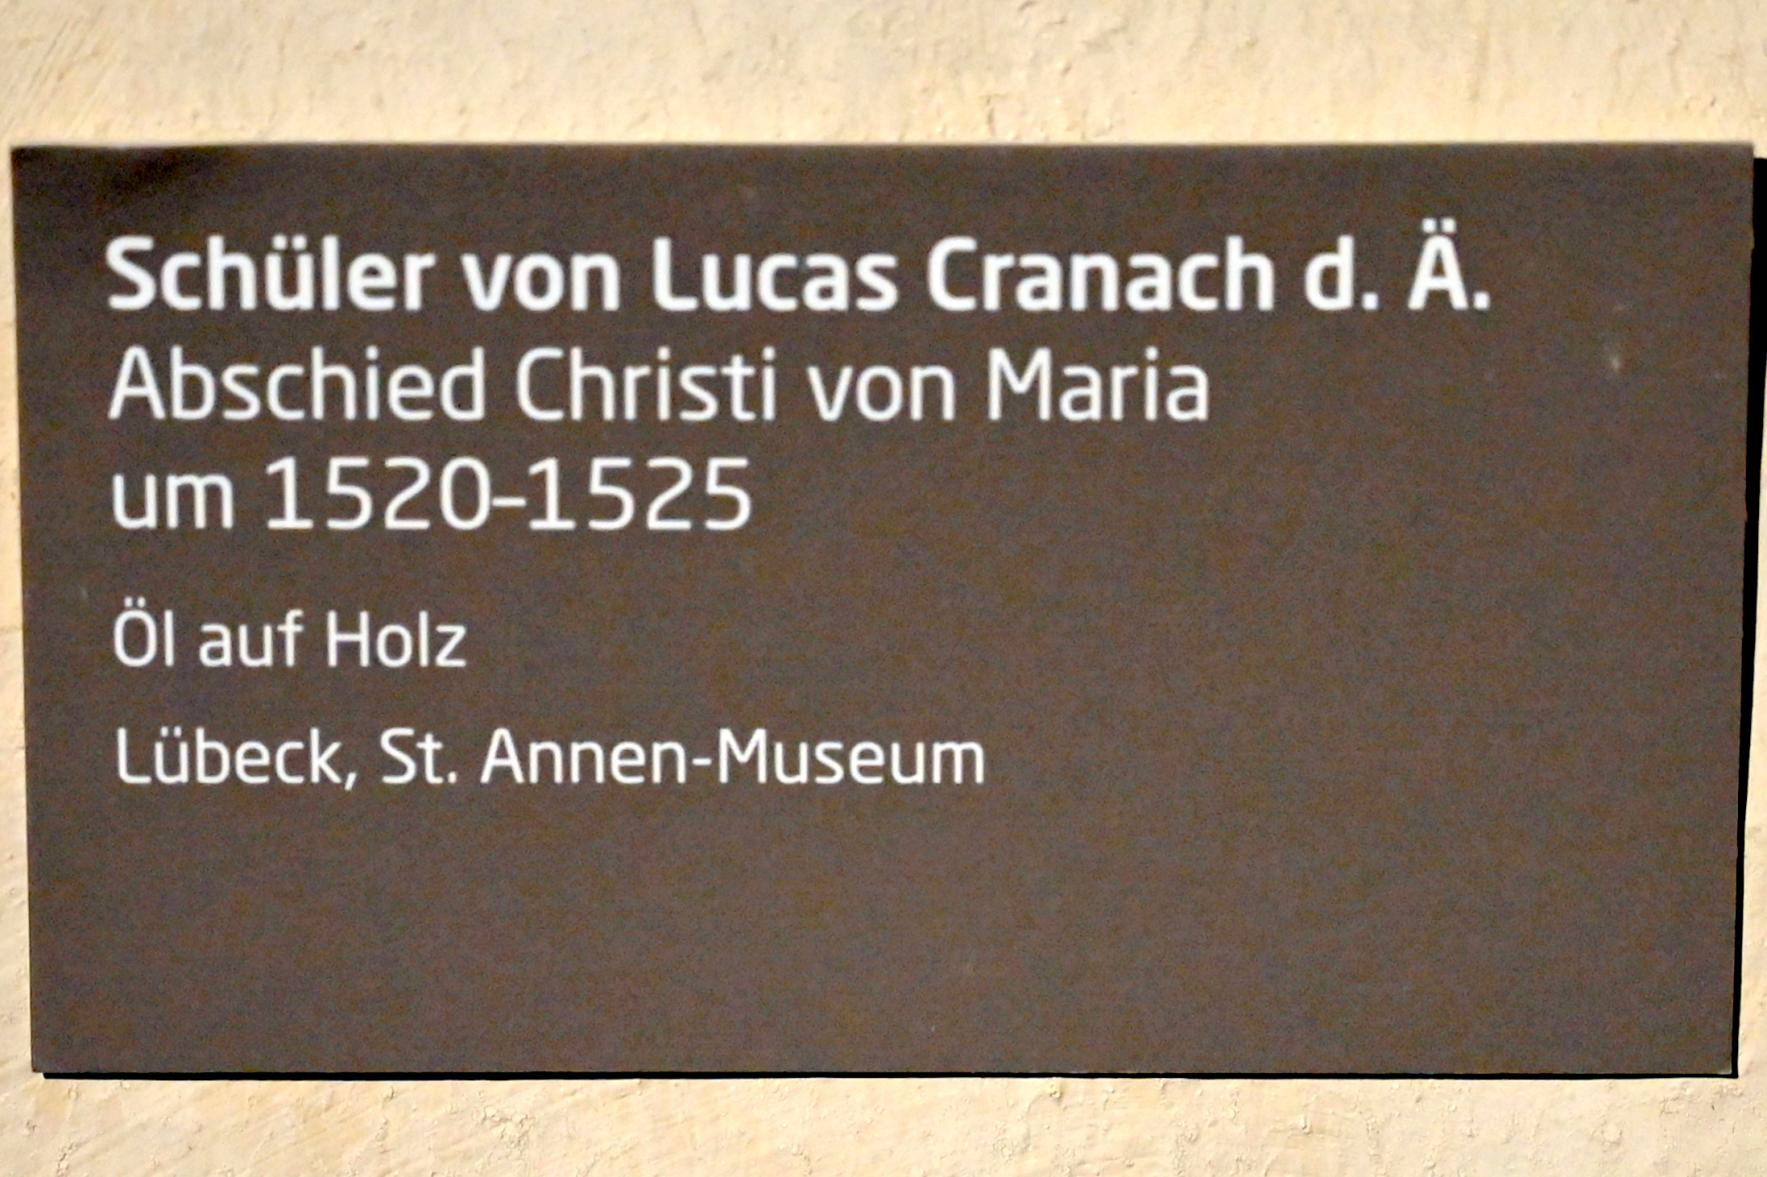 Lucas Cranach der Ältere (Umkreis) (1509–1553), Abschied Christi von Maria, Lübeck, St. Annen-Museum, Saal 12, nach 1520, Bild 2/2